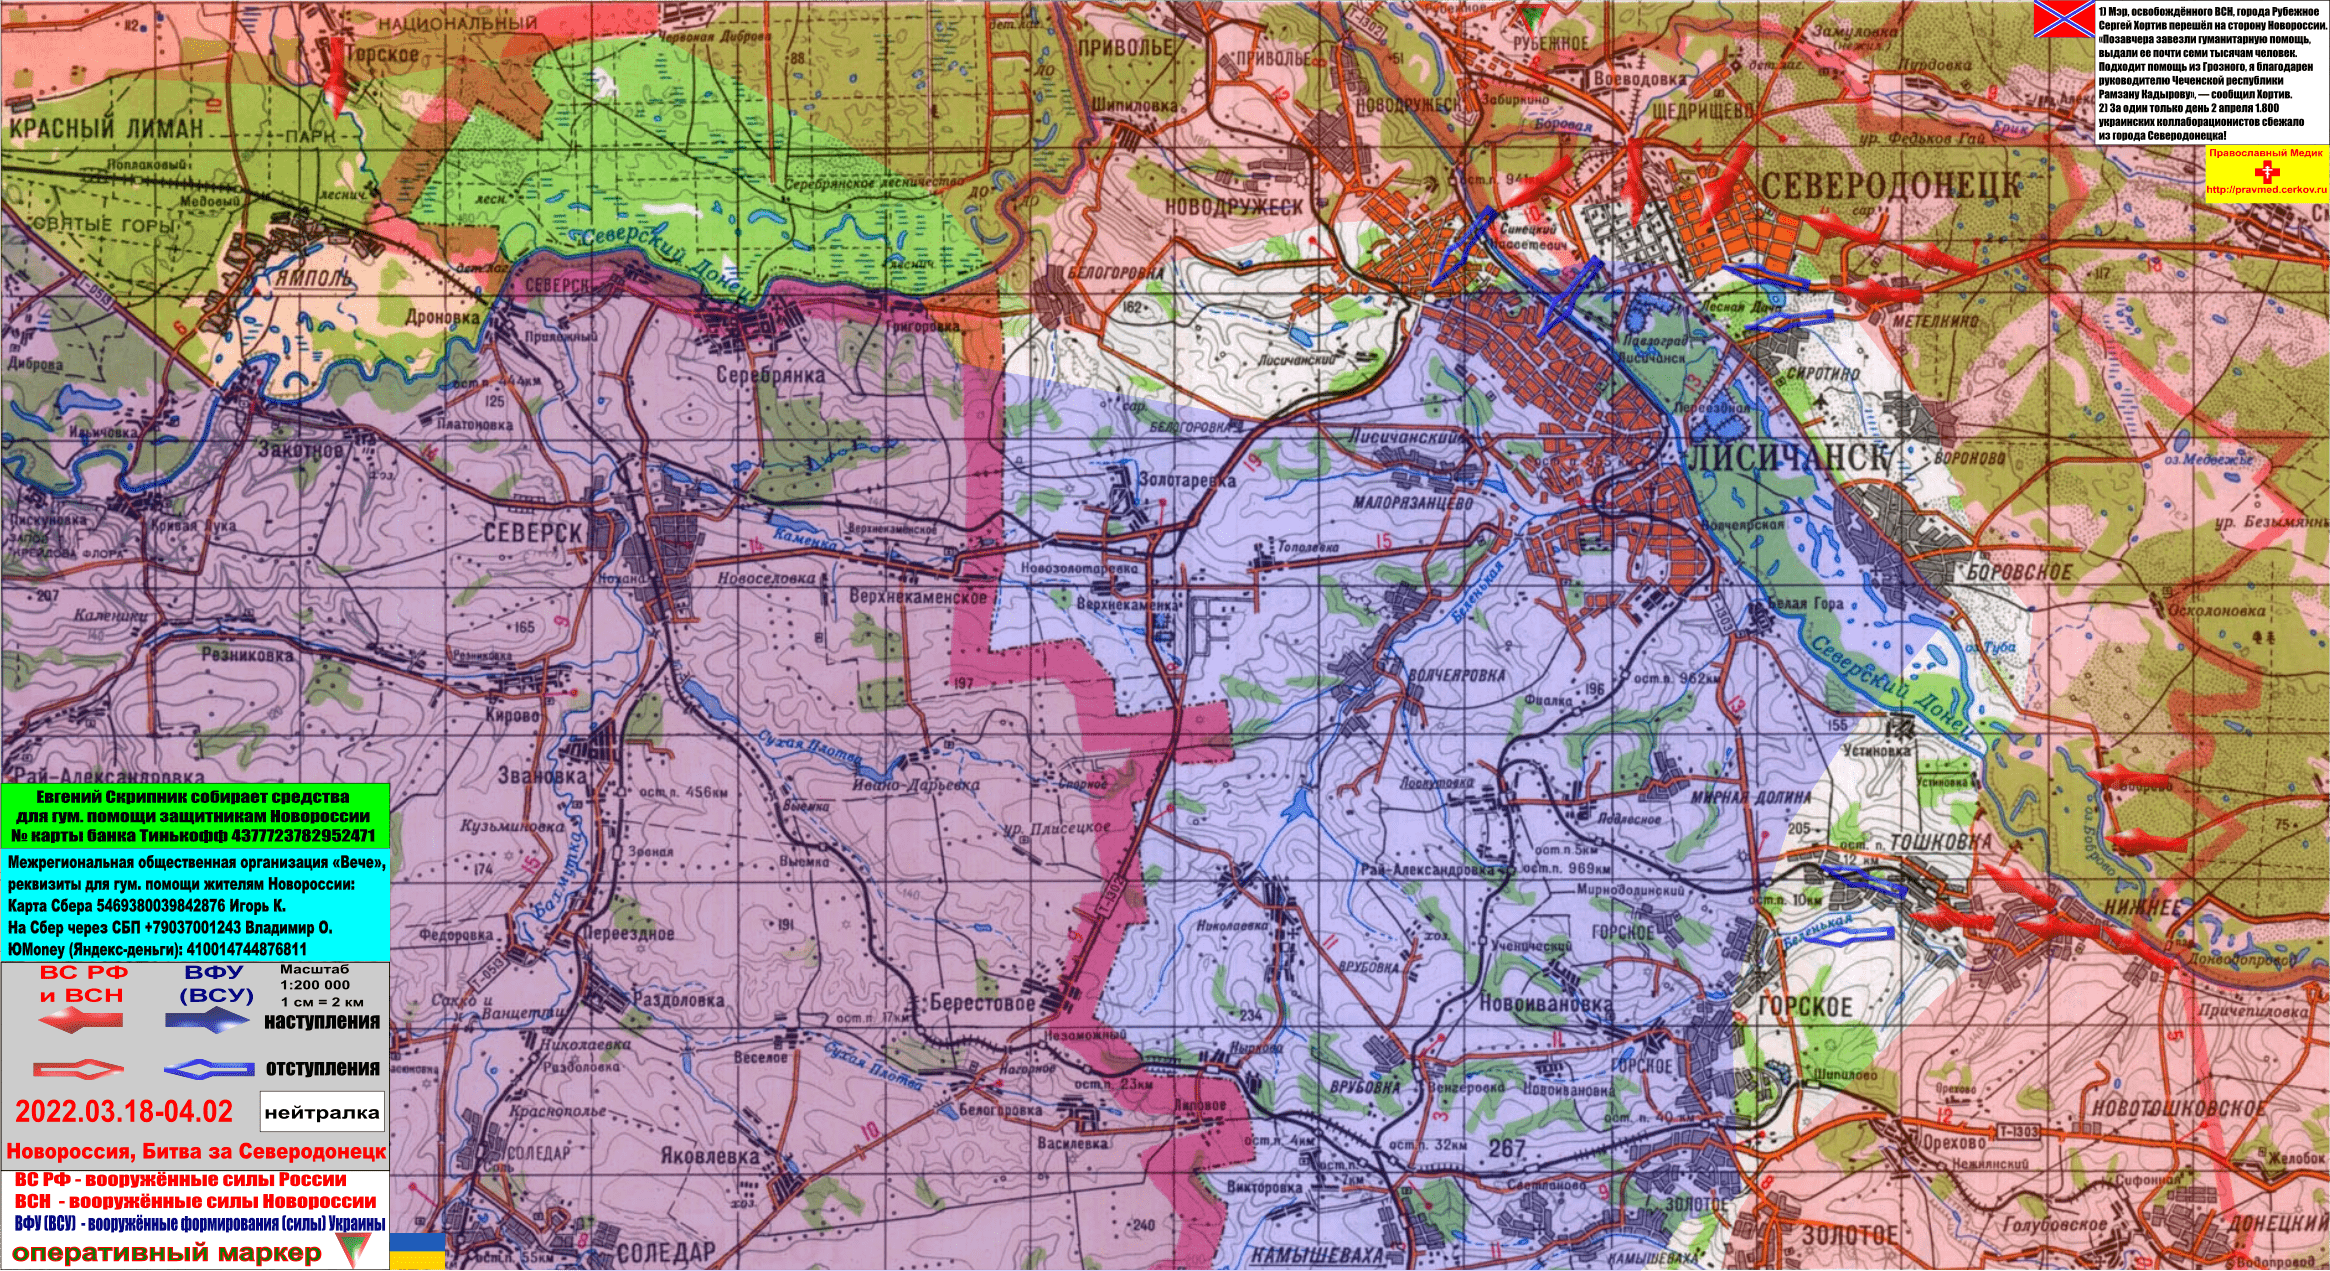 Карта новороссии 2. Новороссия на карте. Северодонецк на карте. Границы Новороссии на карте 2022. Северодонецк карта подробная.